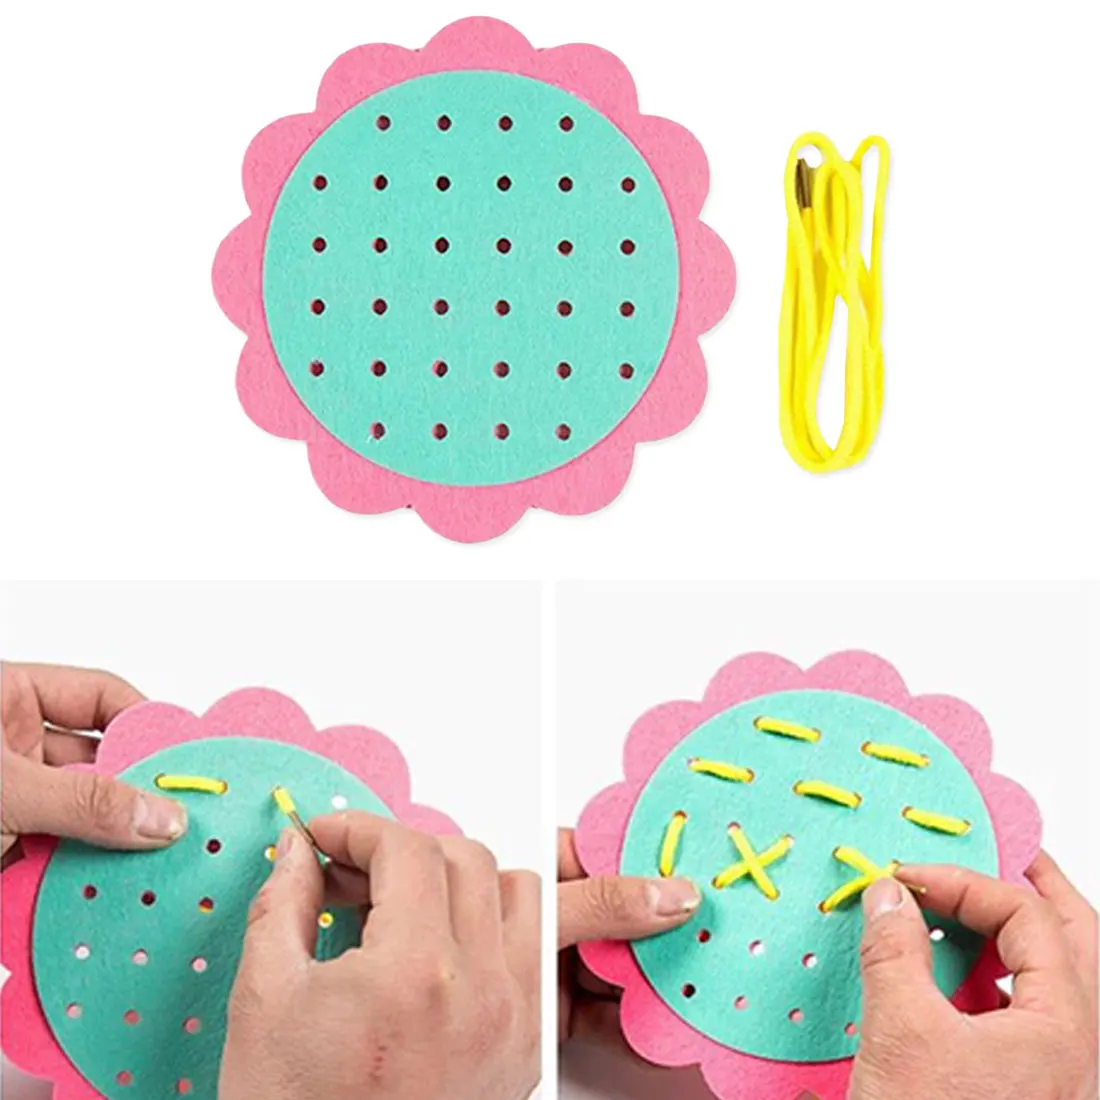 Развивающие Игрушки для раннего обучения учебные материалы математические игрушки резьба детский сад Руководство Diy ткань носить шнурки